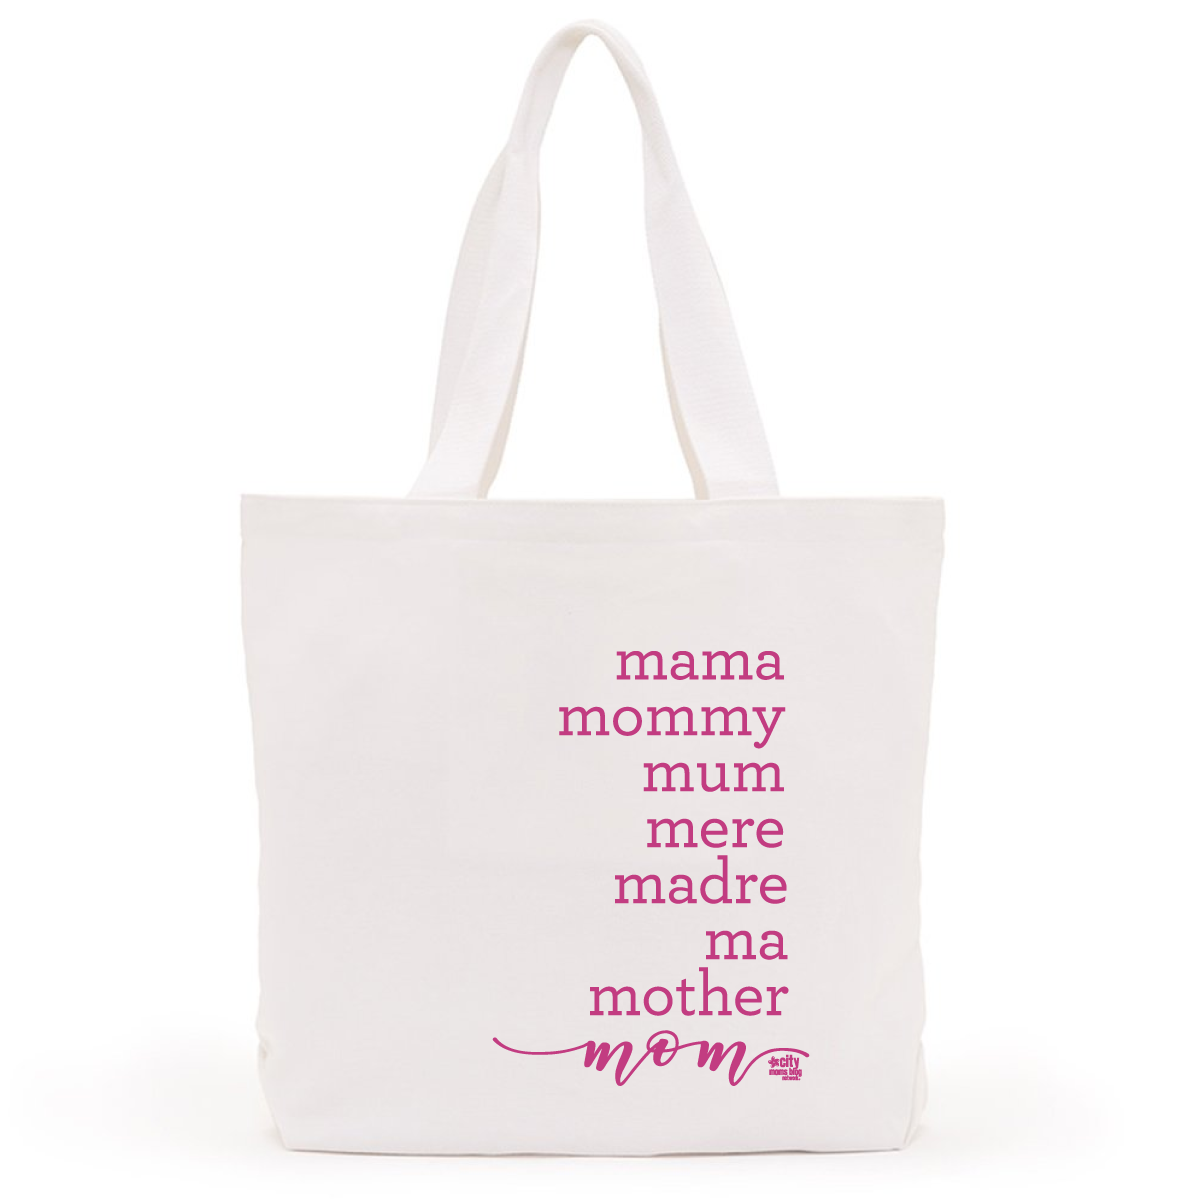 Mom Bag Design 2018